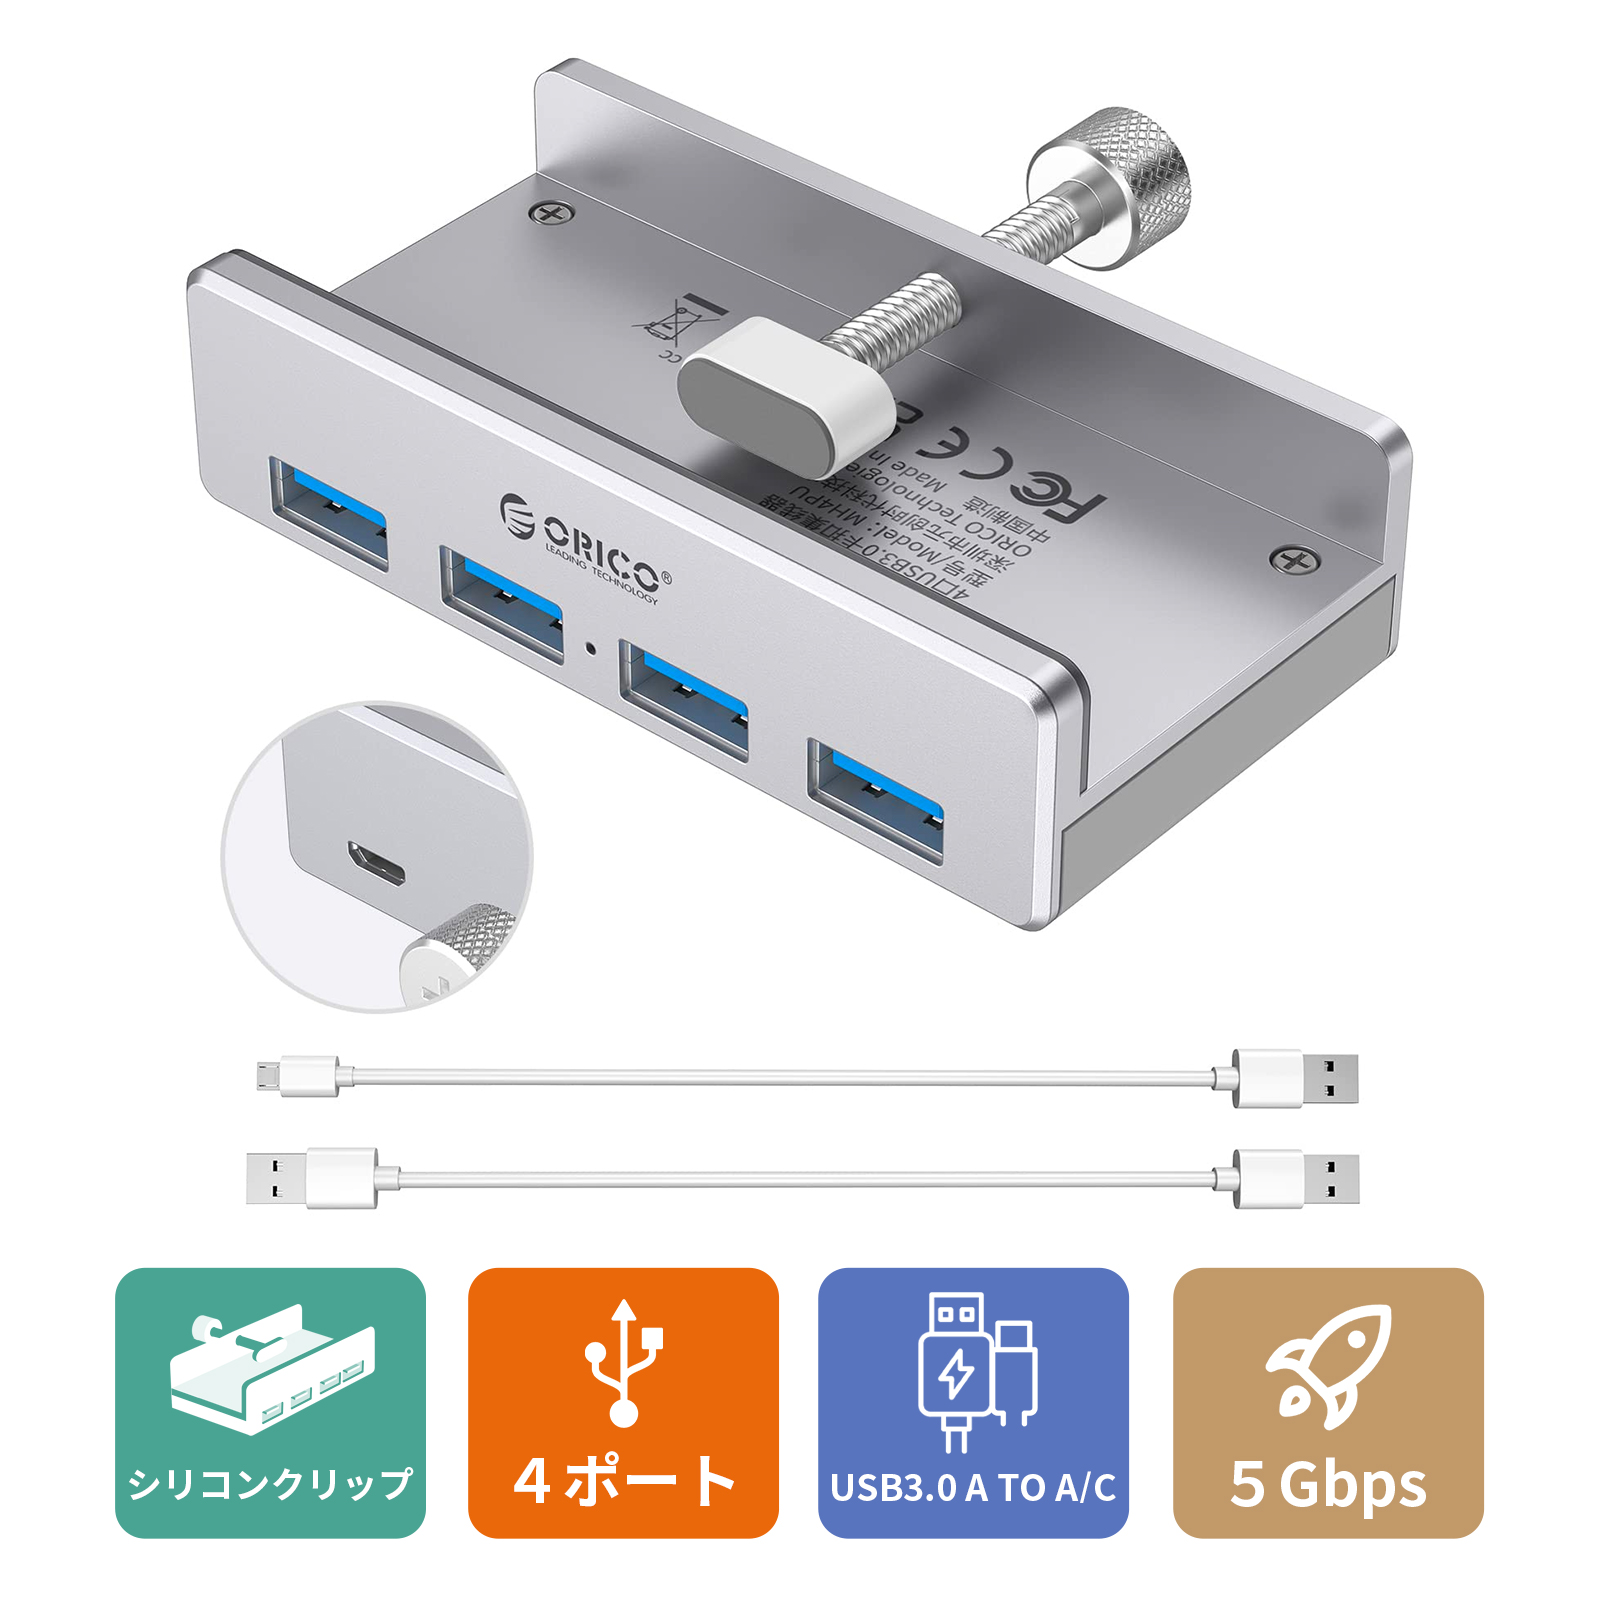 ORICO USB3.0 ハブ 4ポート 5Gbps高速 クリップ式 USBハブ バスパワー アルミHUB  2本USB延長ケーブル付 シルバー MH4PU-P-2